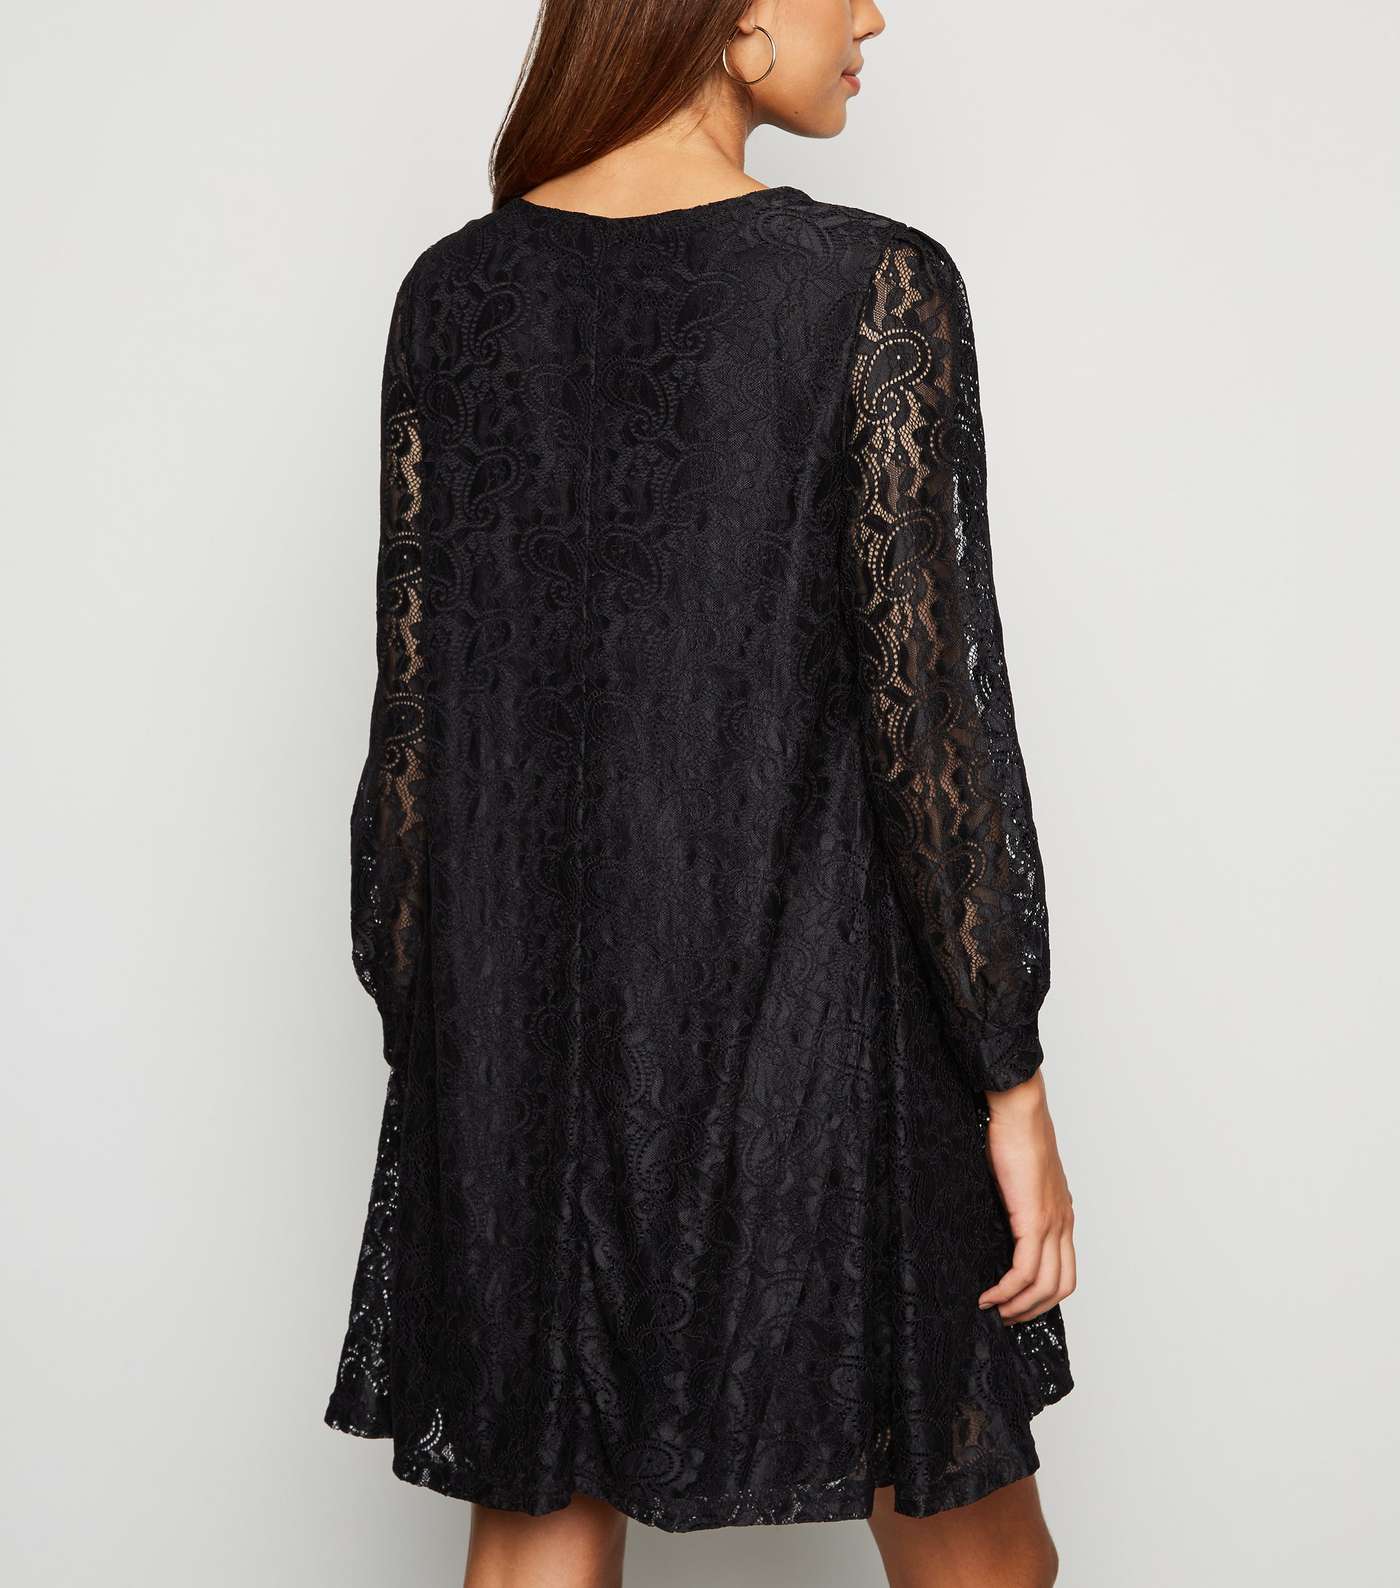 Mela Black Lace Tunic Dress Image 3